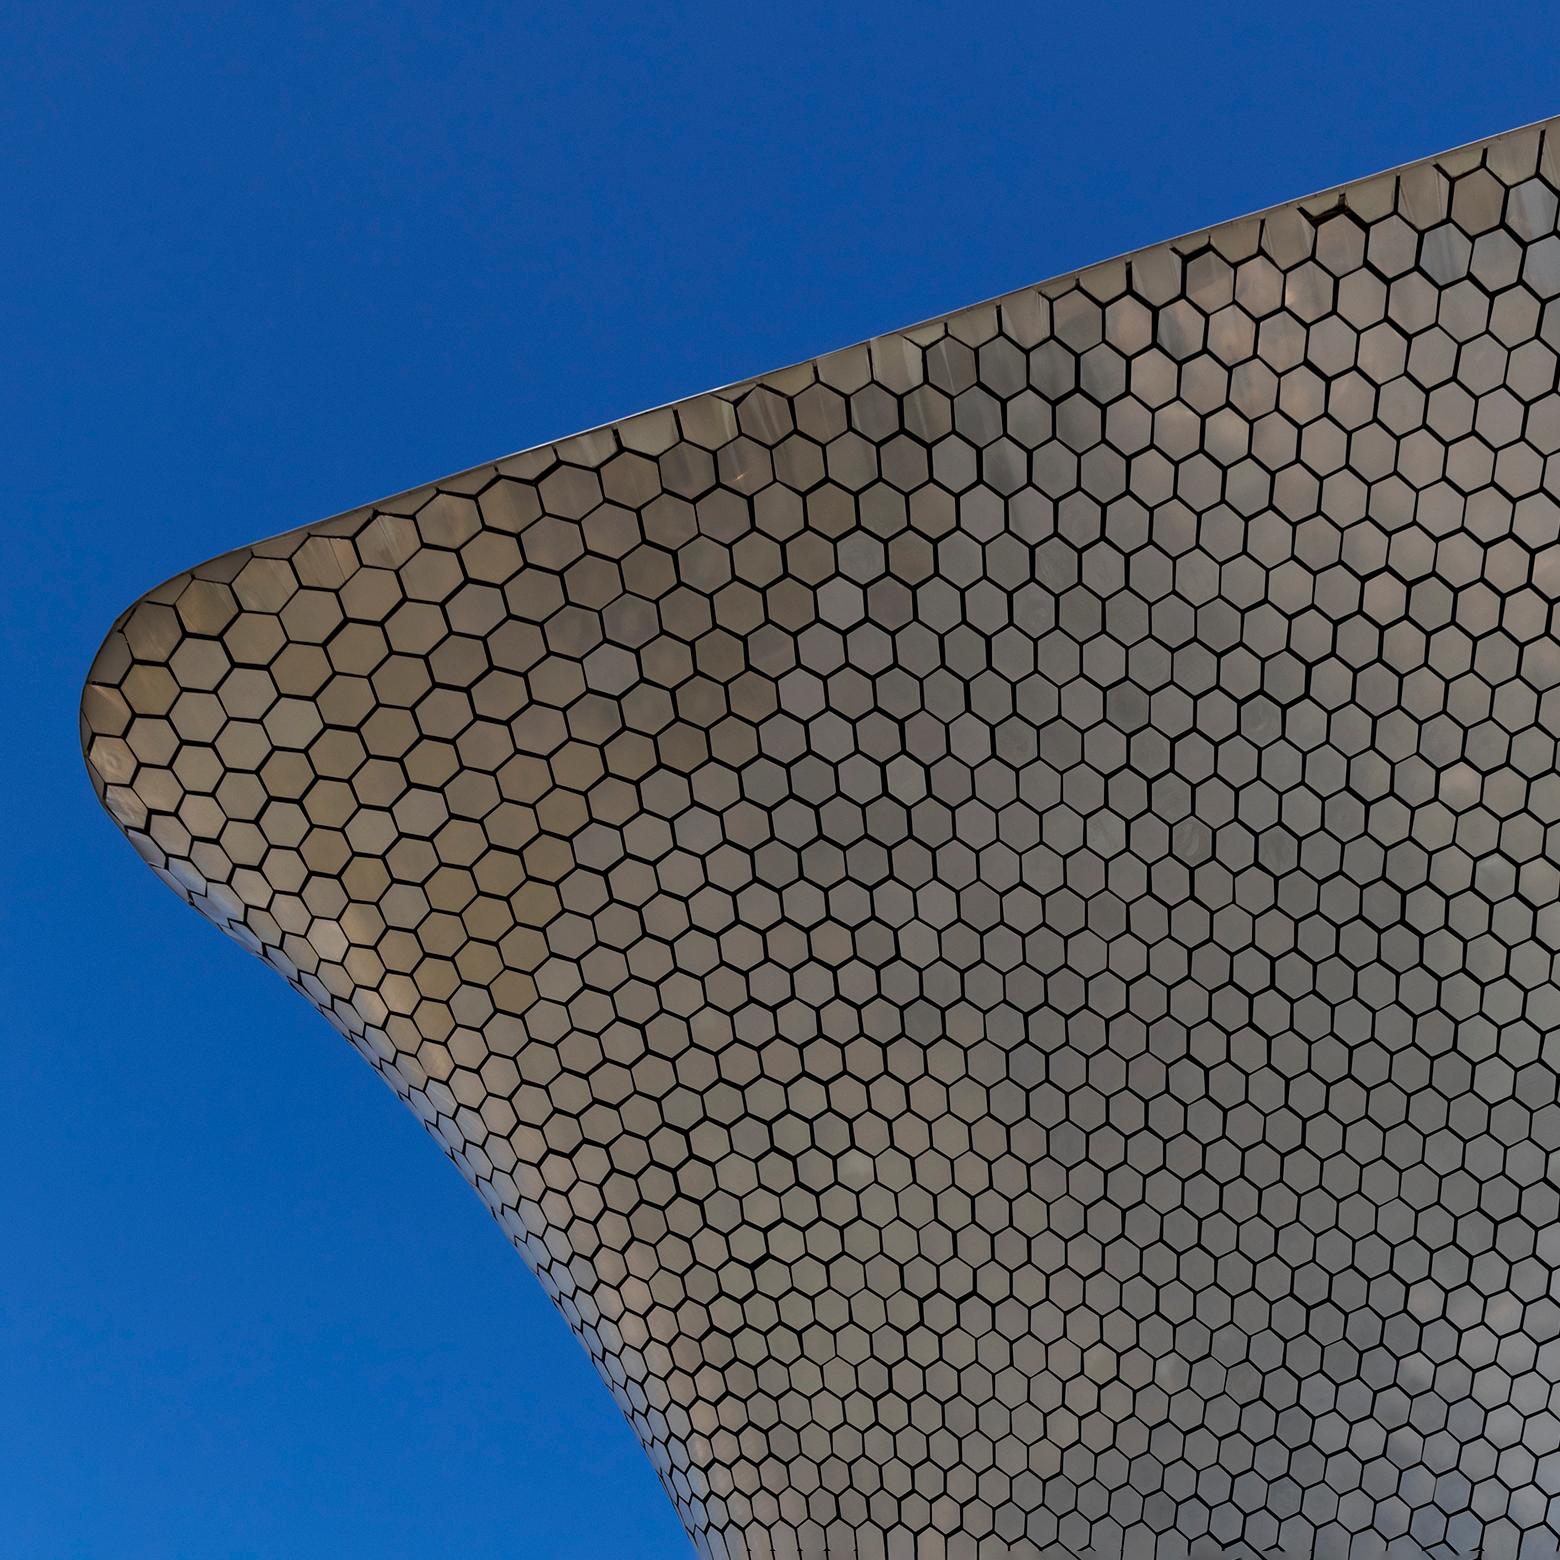 Museo Soumaya, Mexico City. 2020 - Photograph by  Cosmo Condina